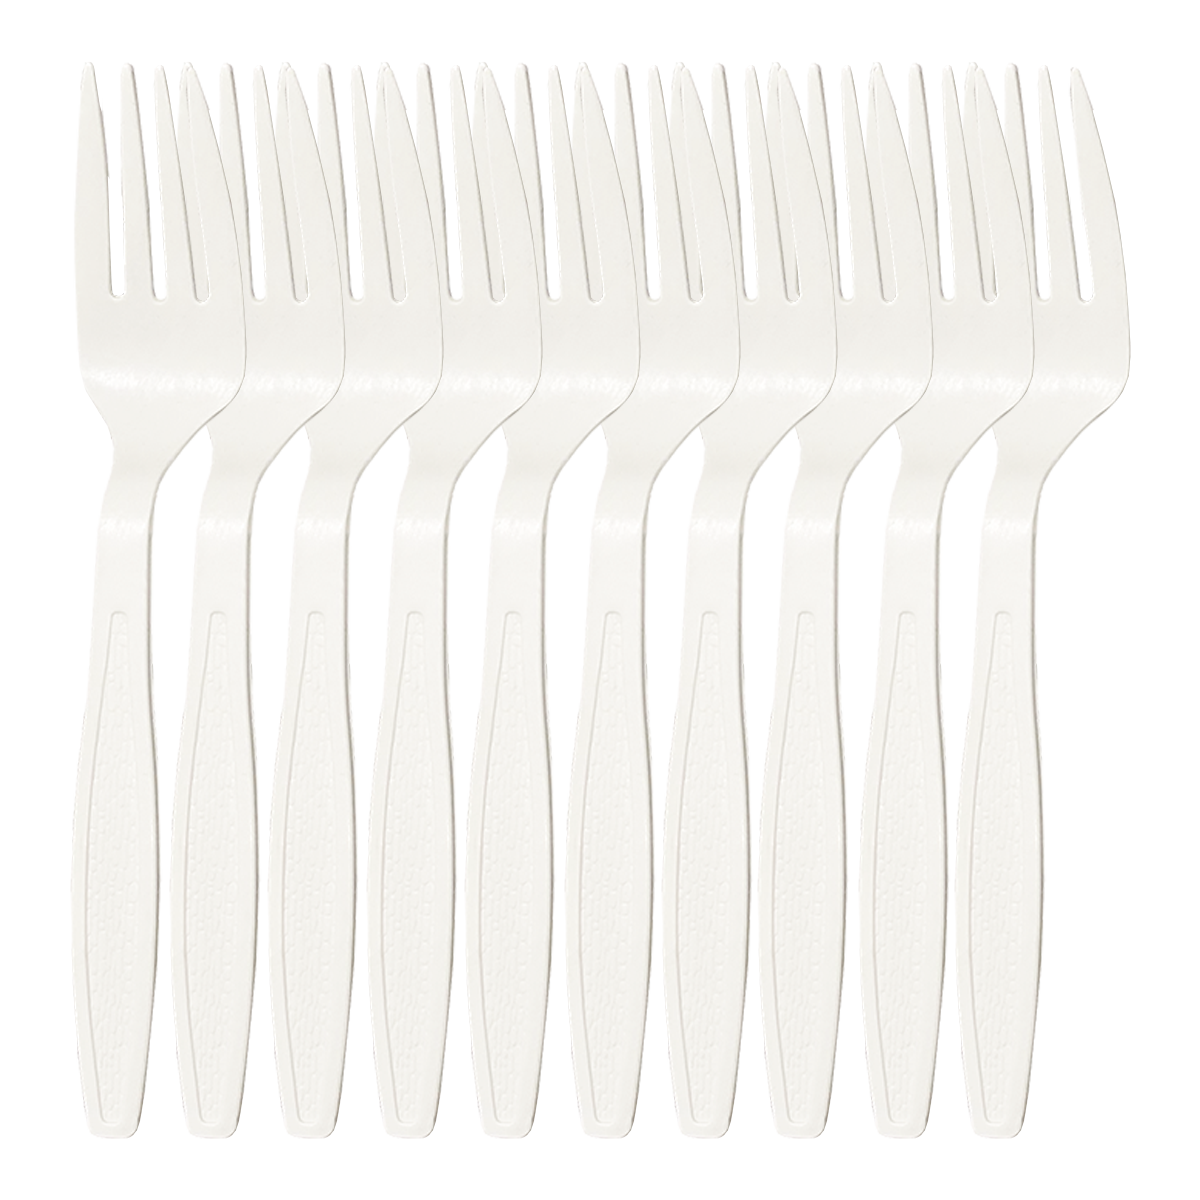 Multiple Forks